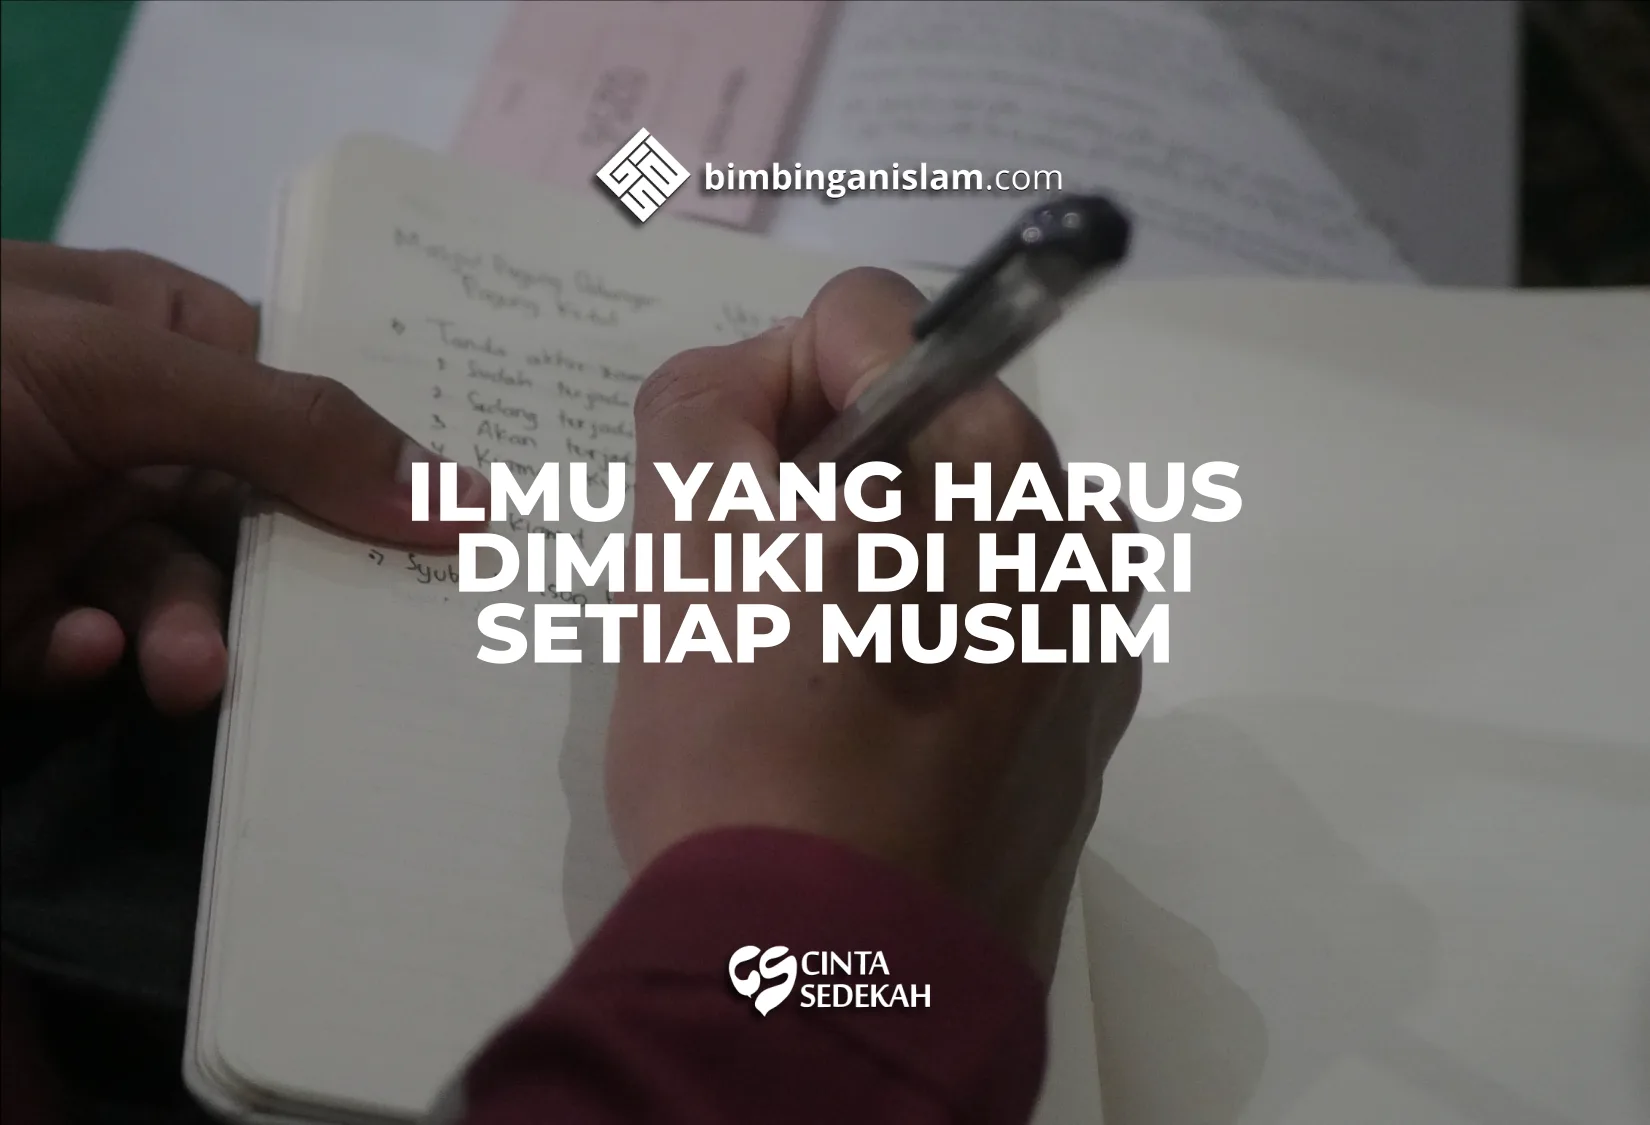 Ilmu Yang Harus Dimiliki Di Hati Setiap Muslim